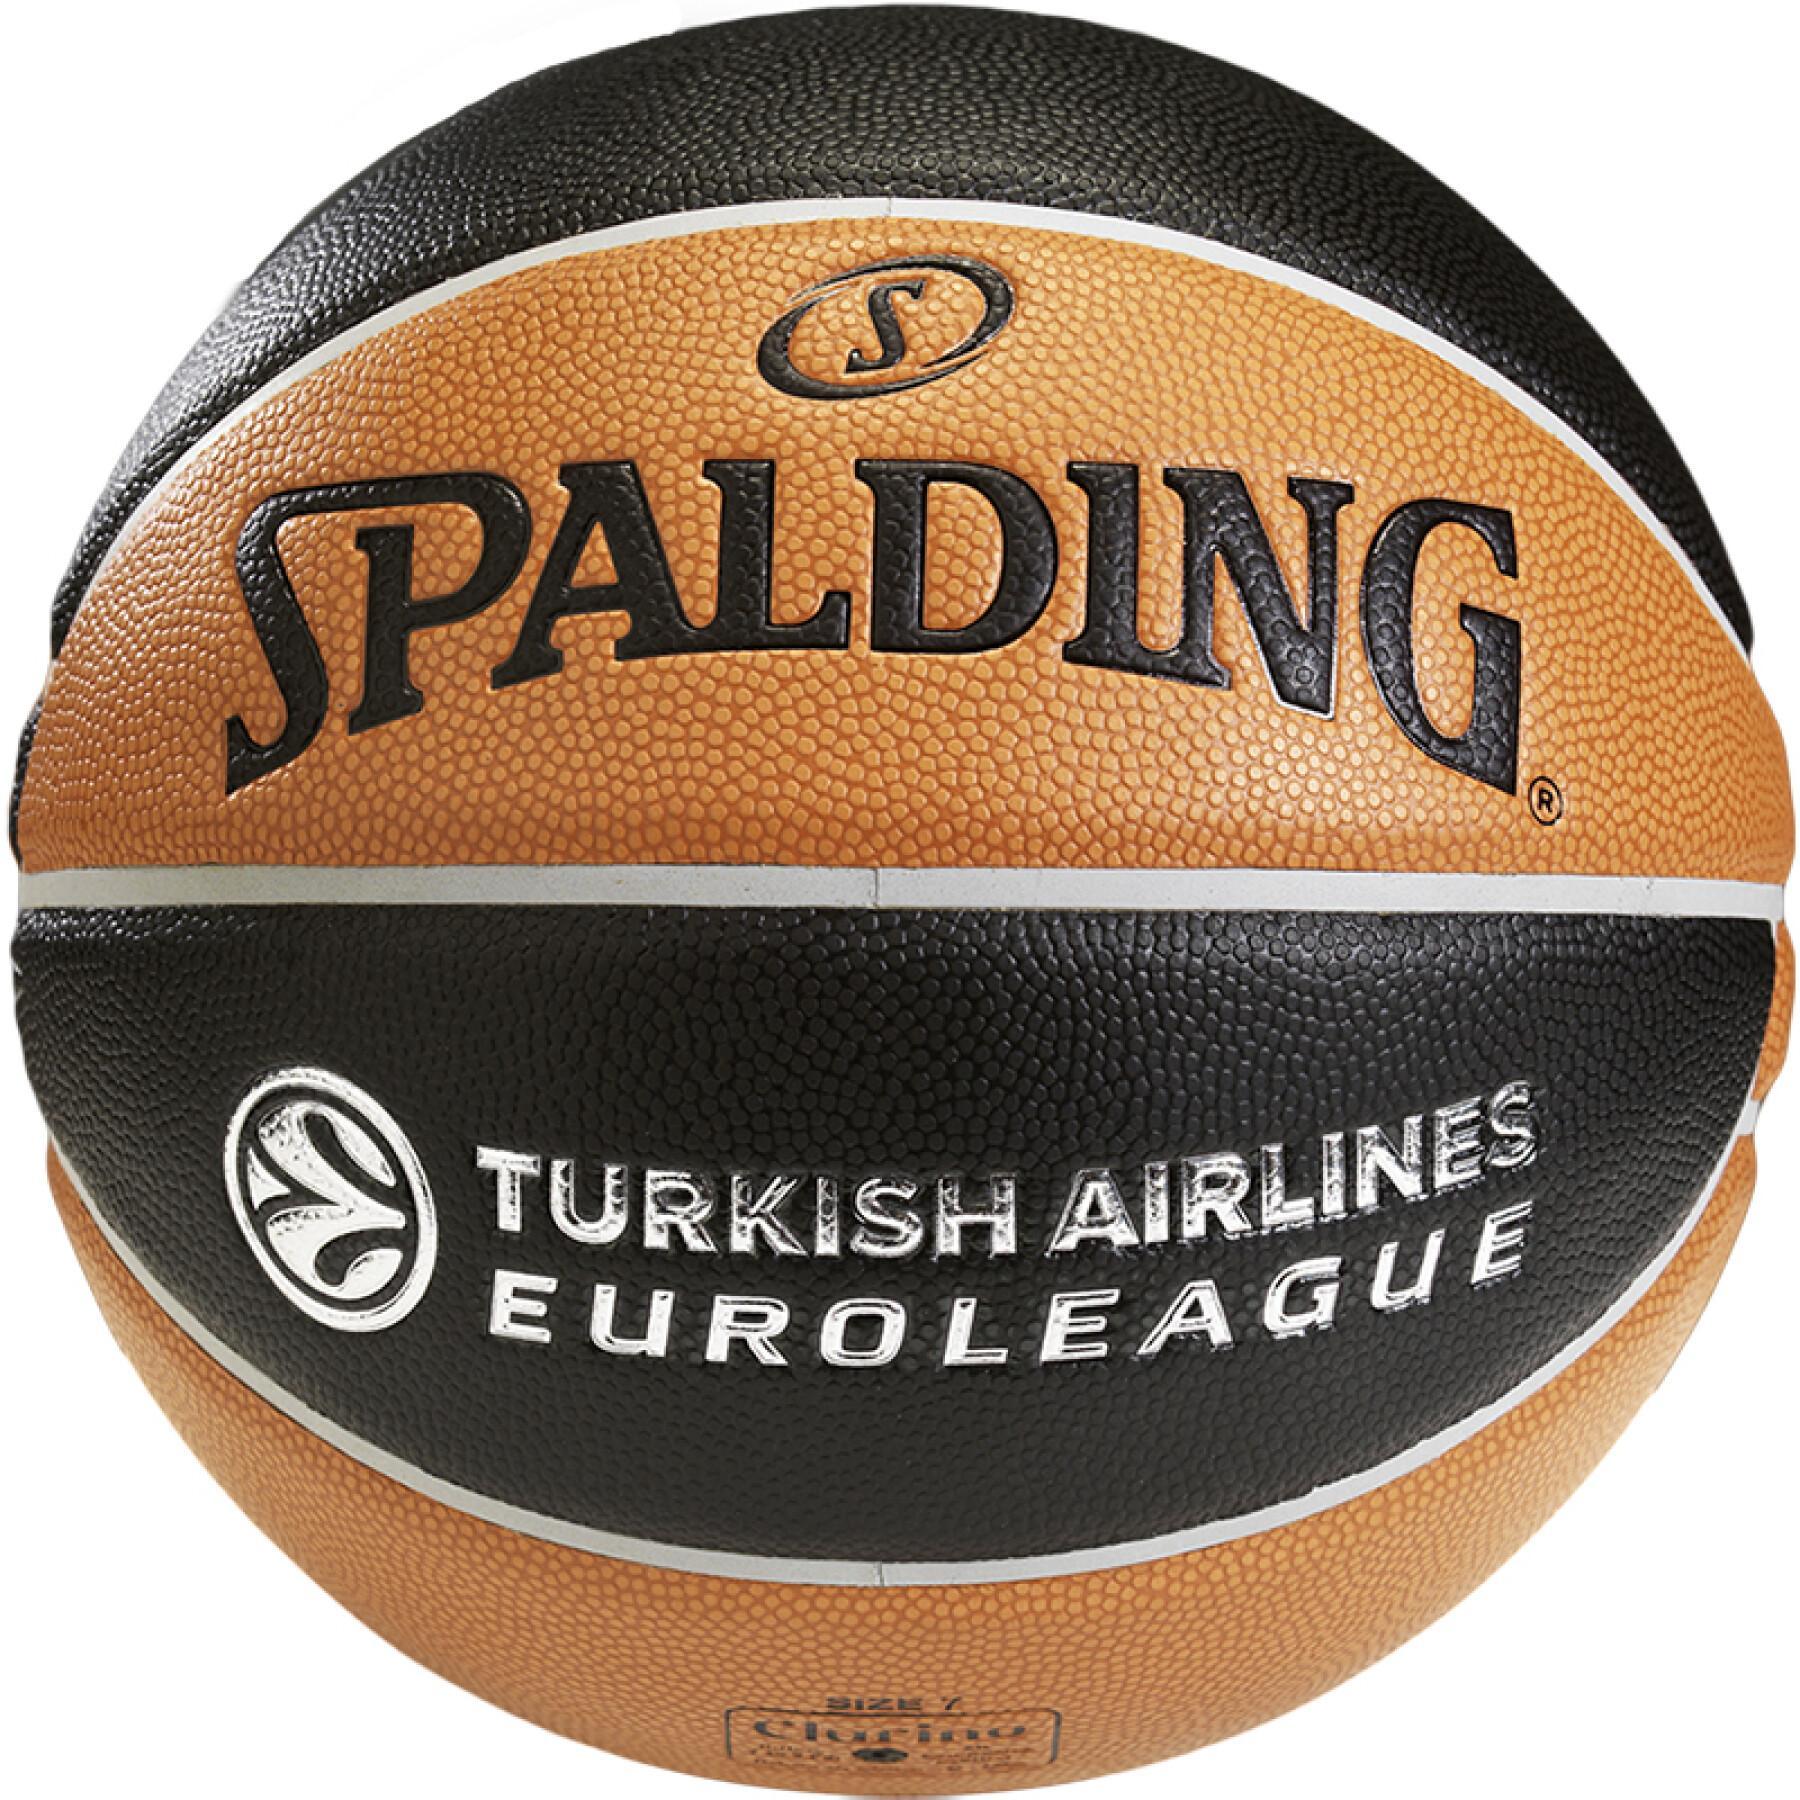 Ballong Spalding Euroleague TF 1000 Legacy